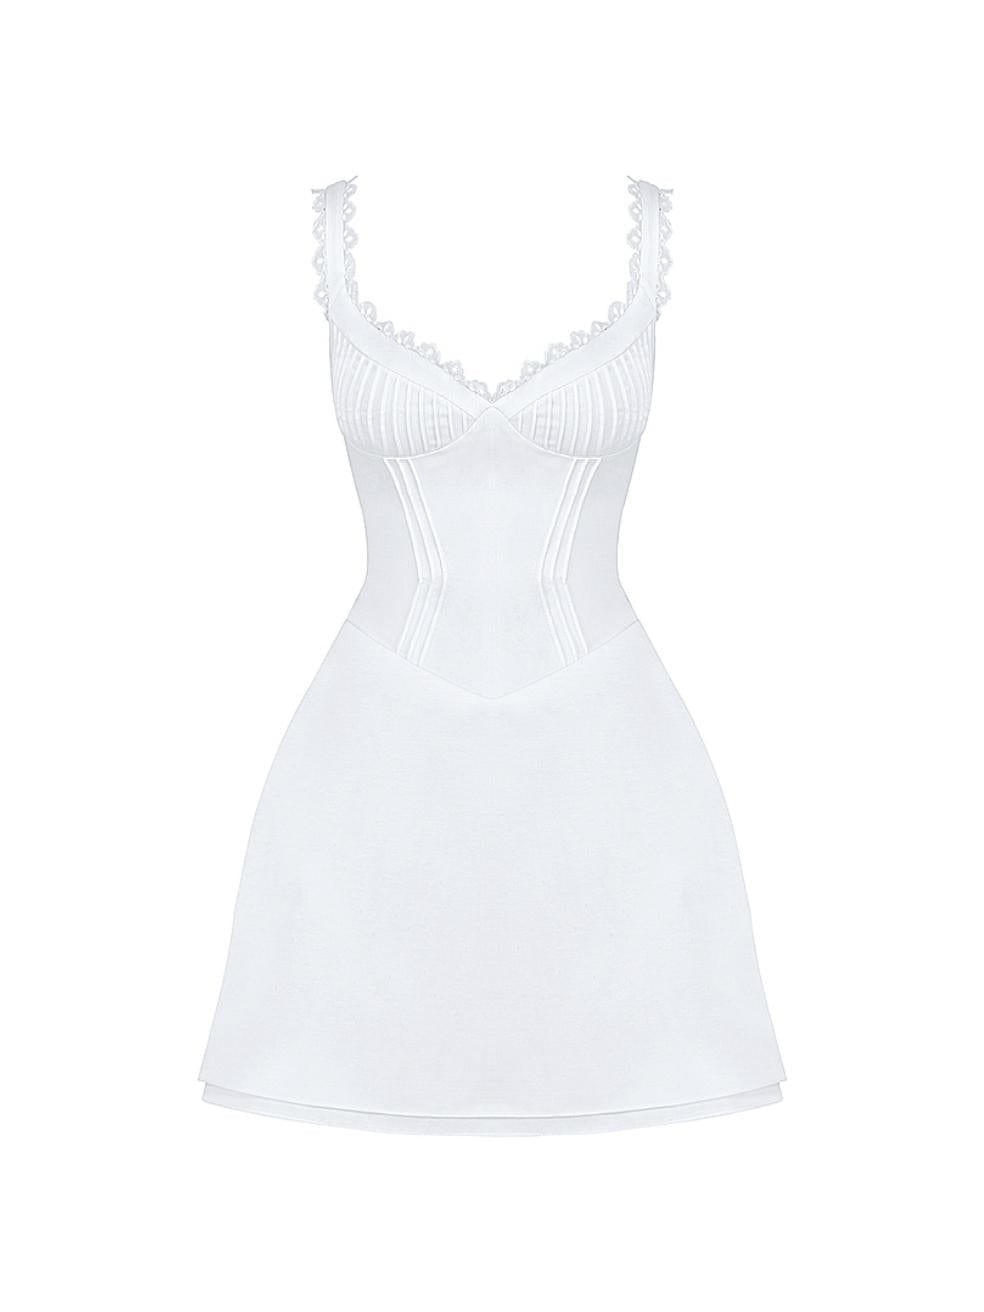 Tilly Mini Dress in White